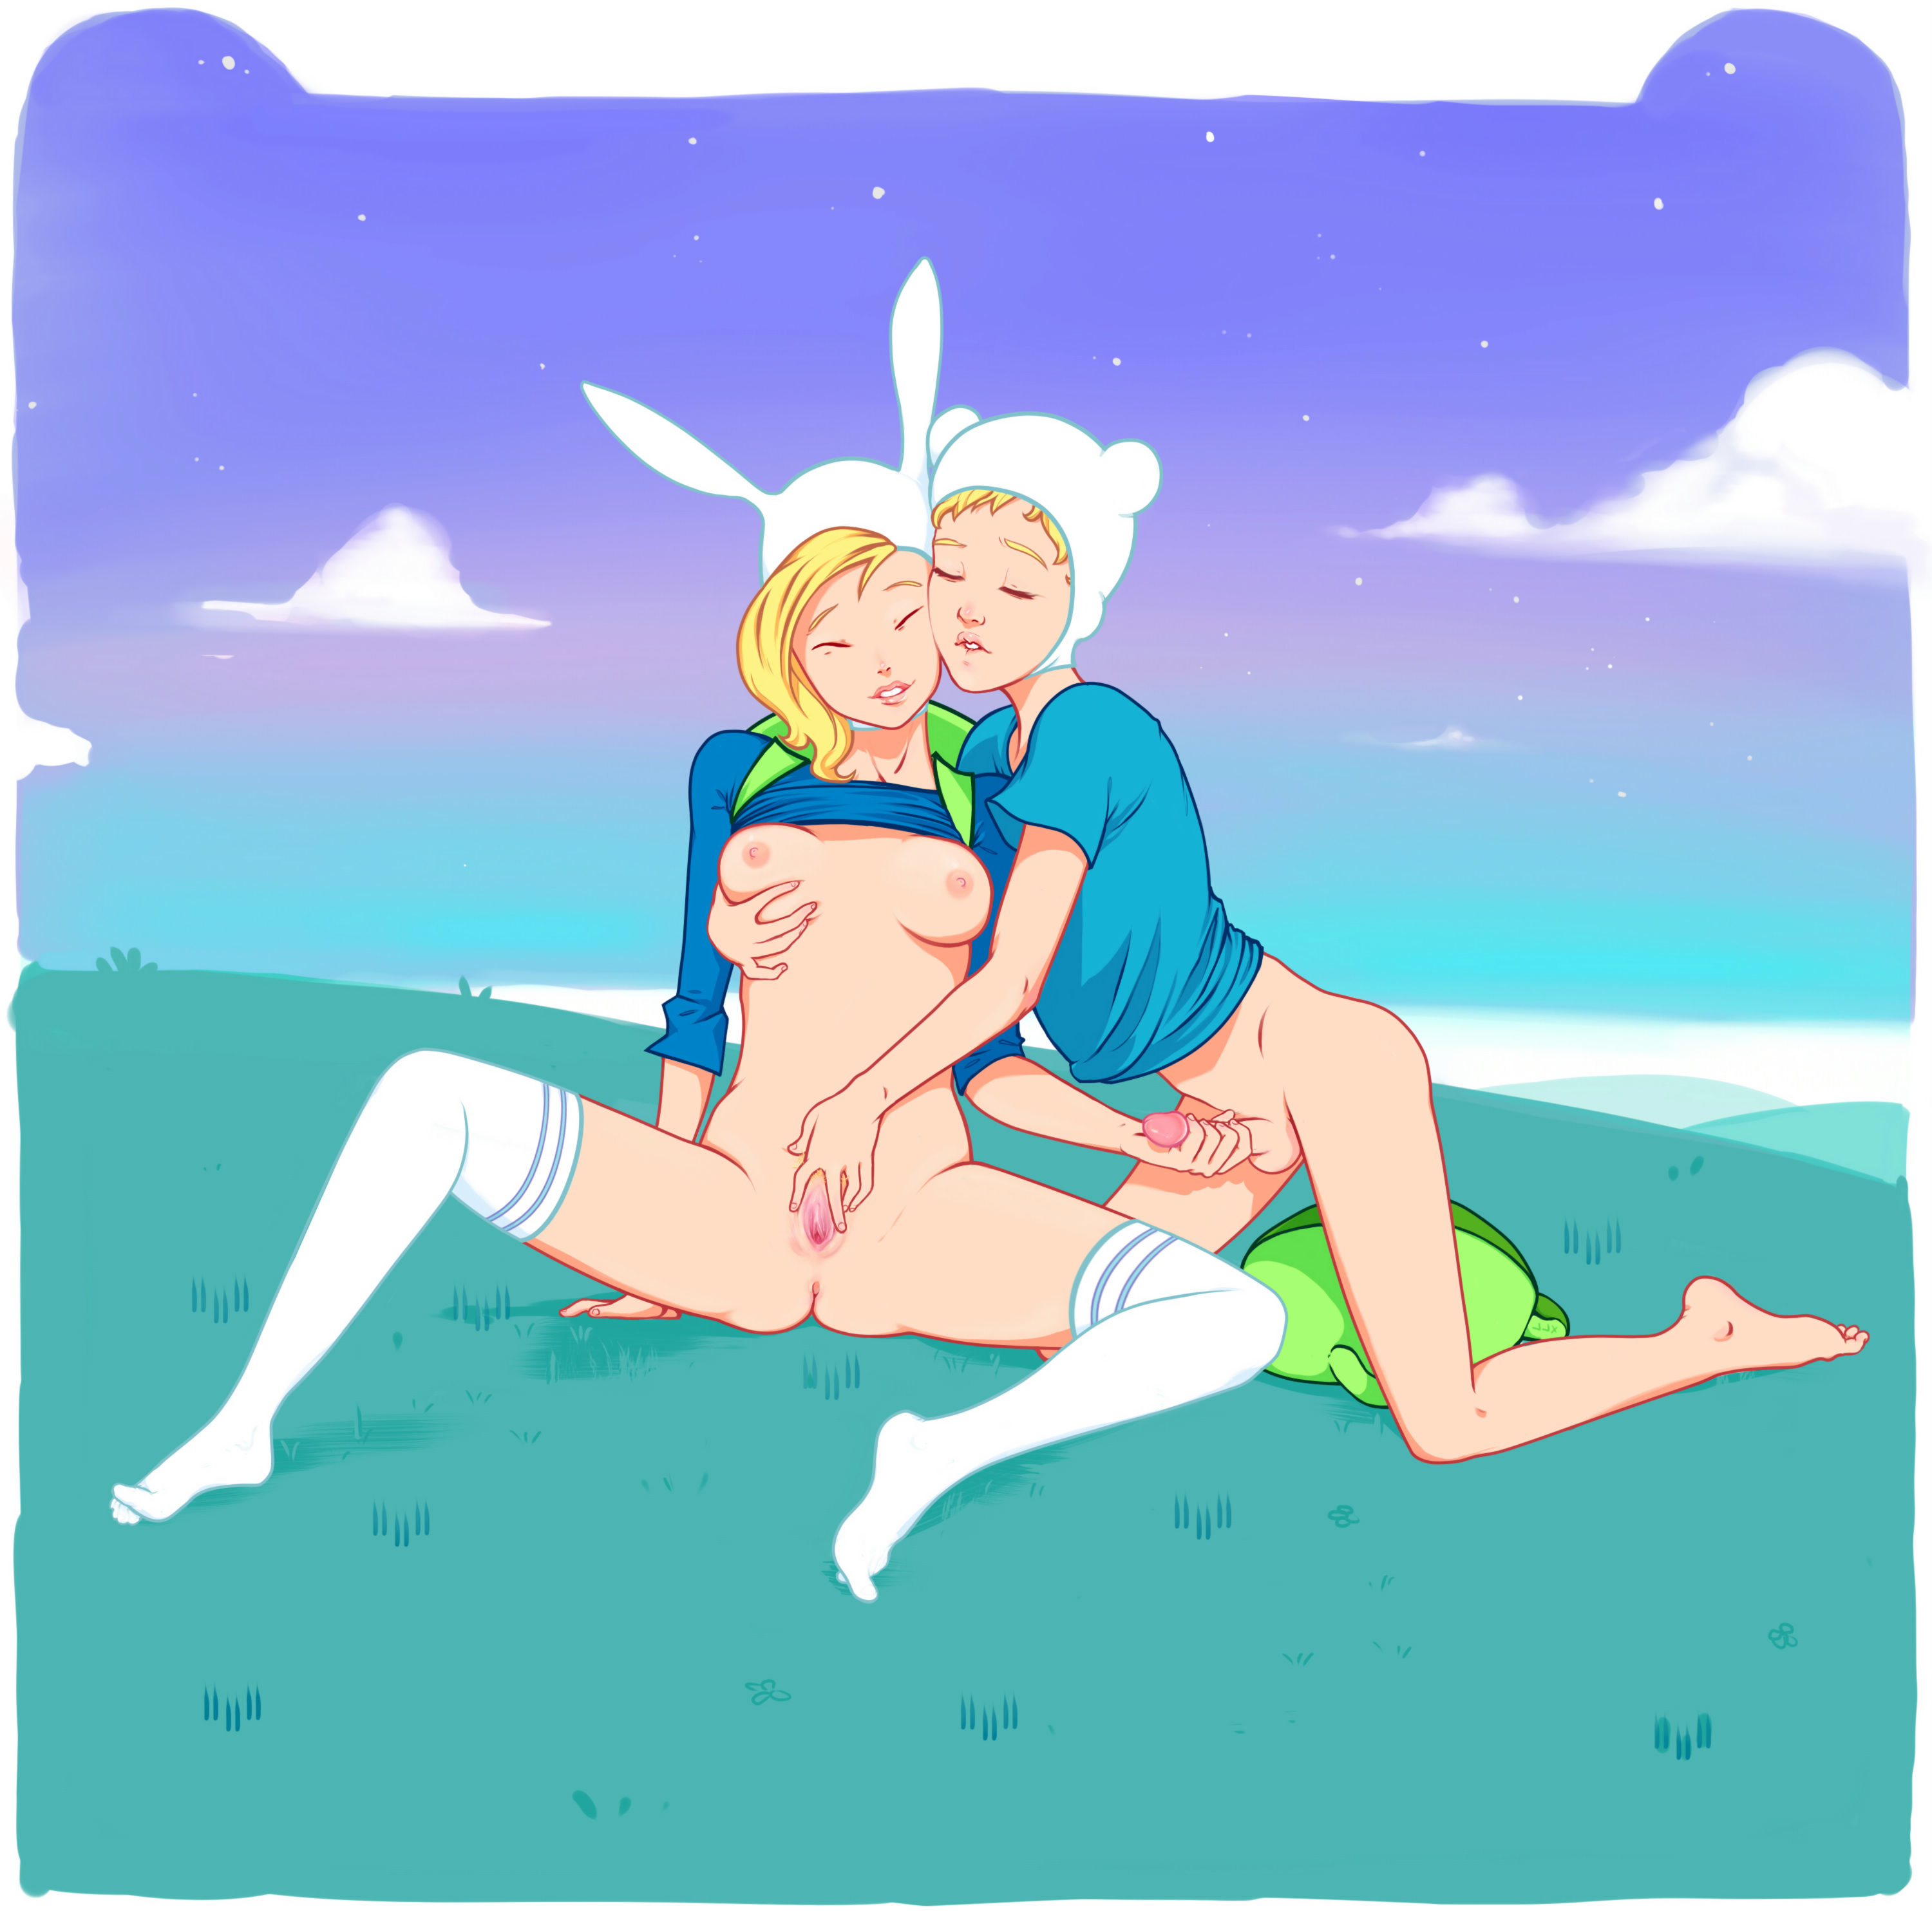 Adventure Time Dickgirl Sex Pics - Post 755771: Adventure_Time Finn_the_Human Fionna_the_Human xxxloveless